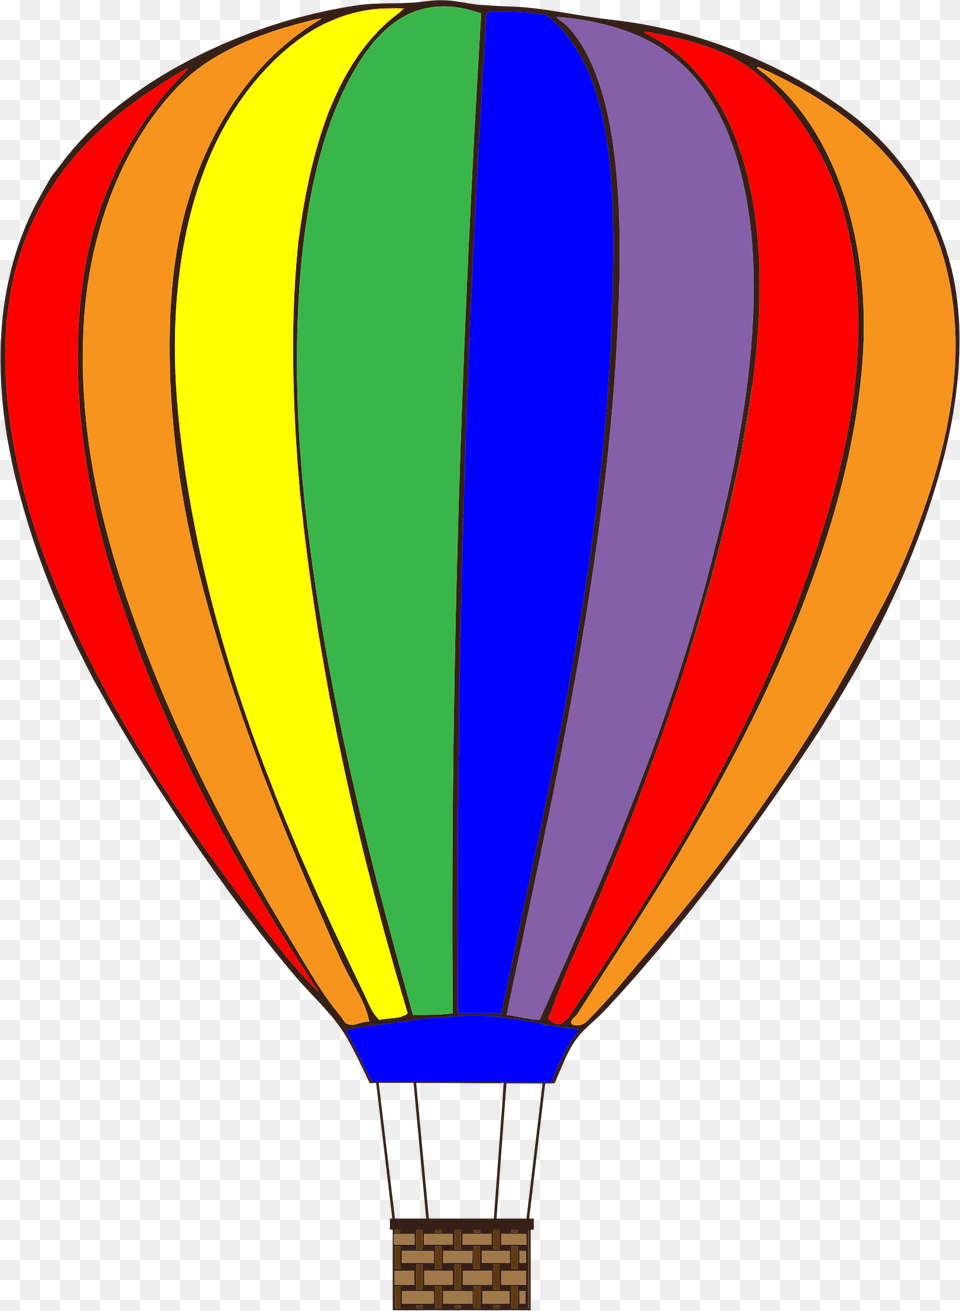 Colorful Hot Air Balloon Icons, Aircraft, Hot Air Balloon, Transportation, Vehicle Png